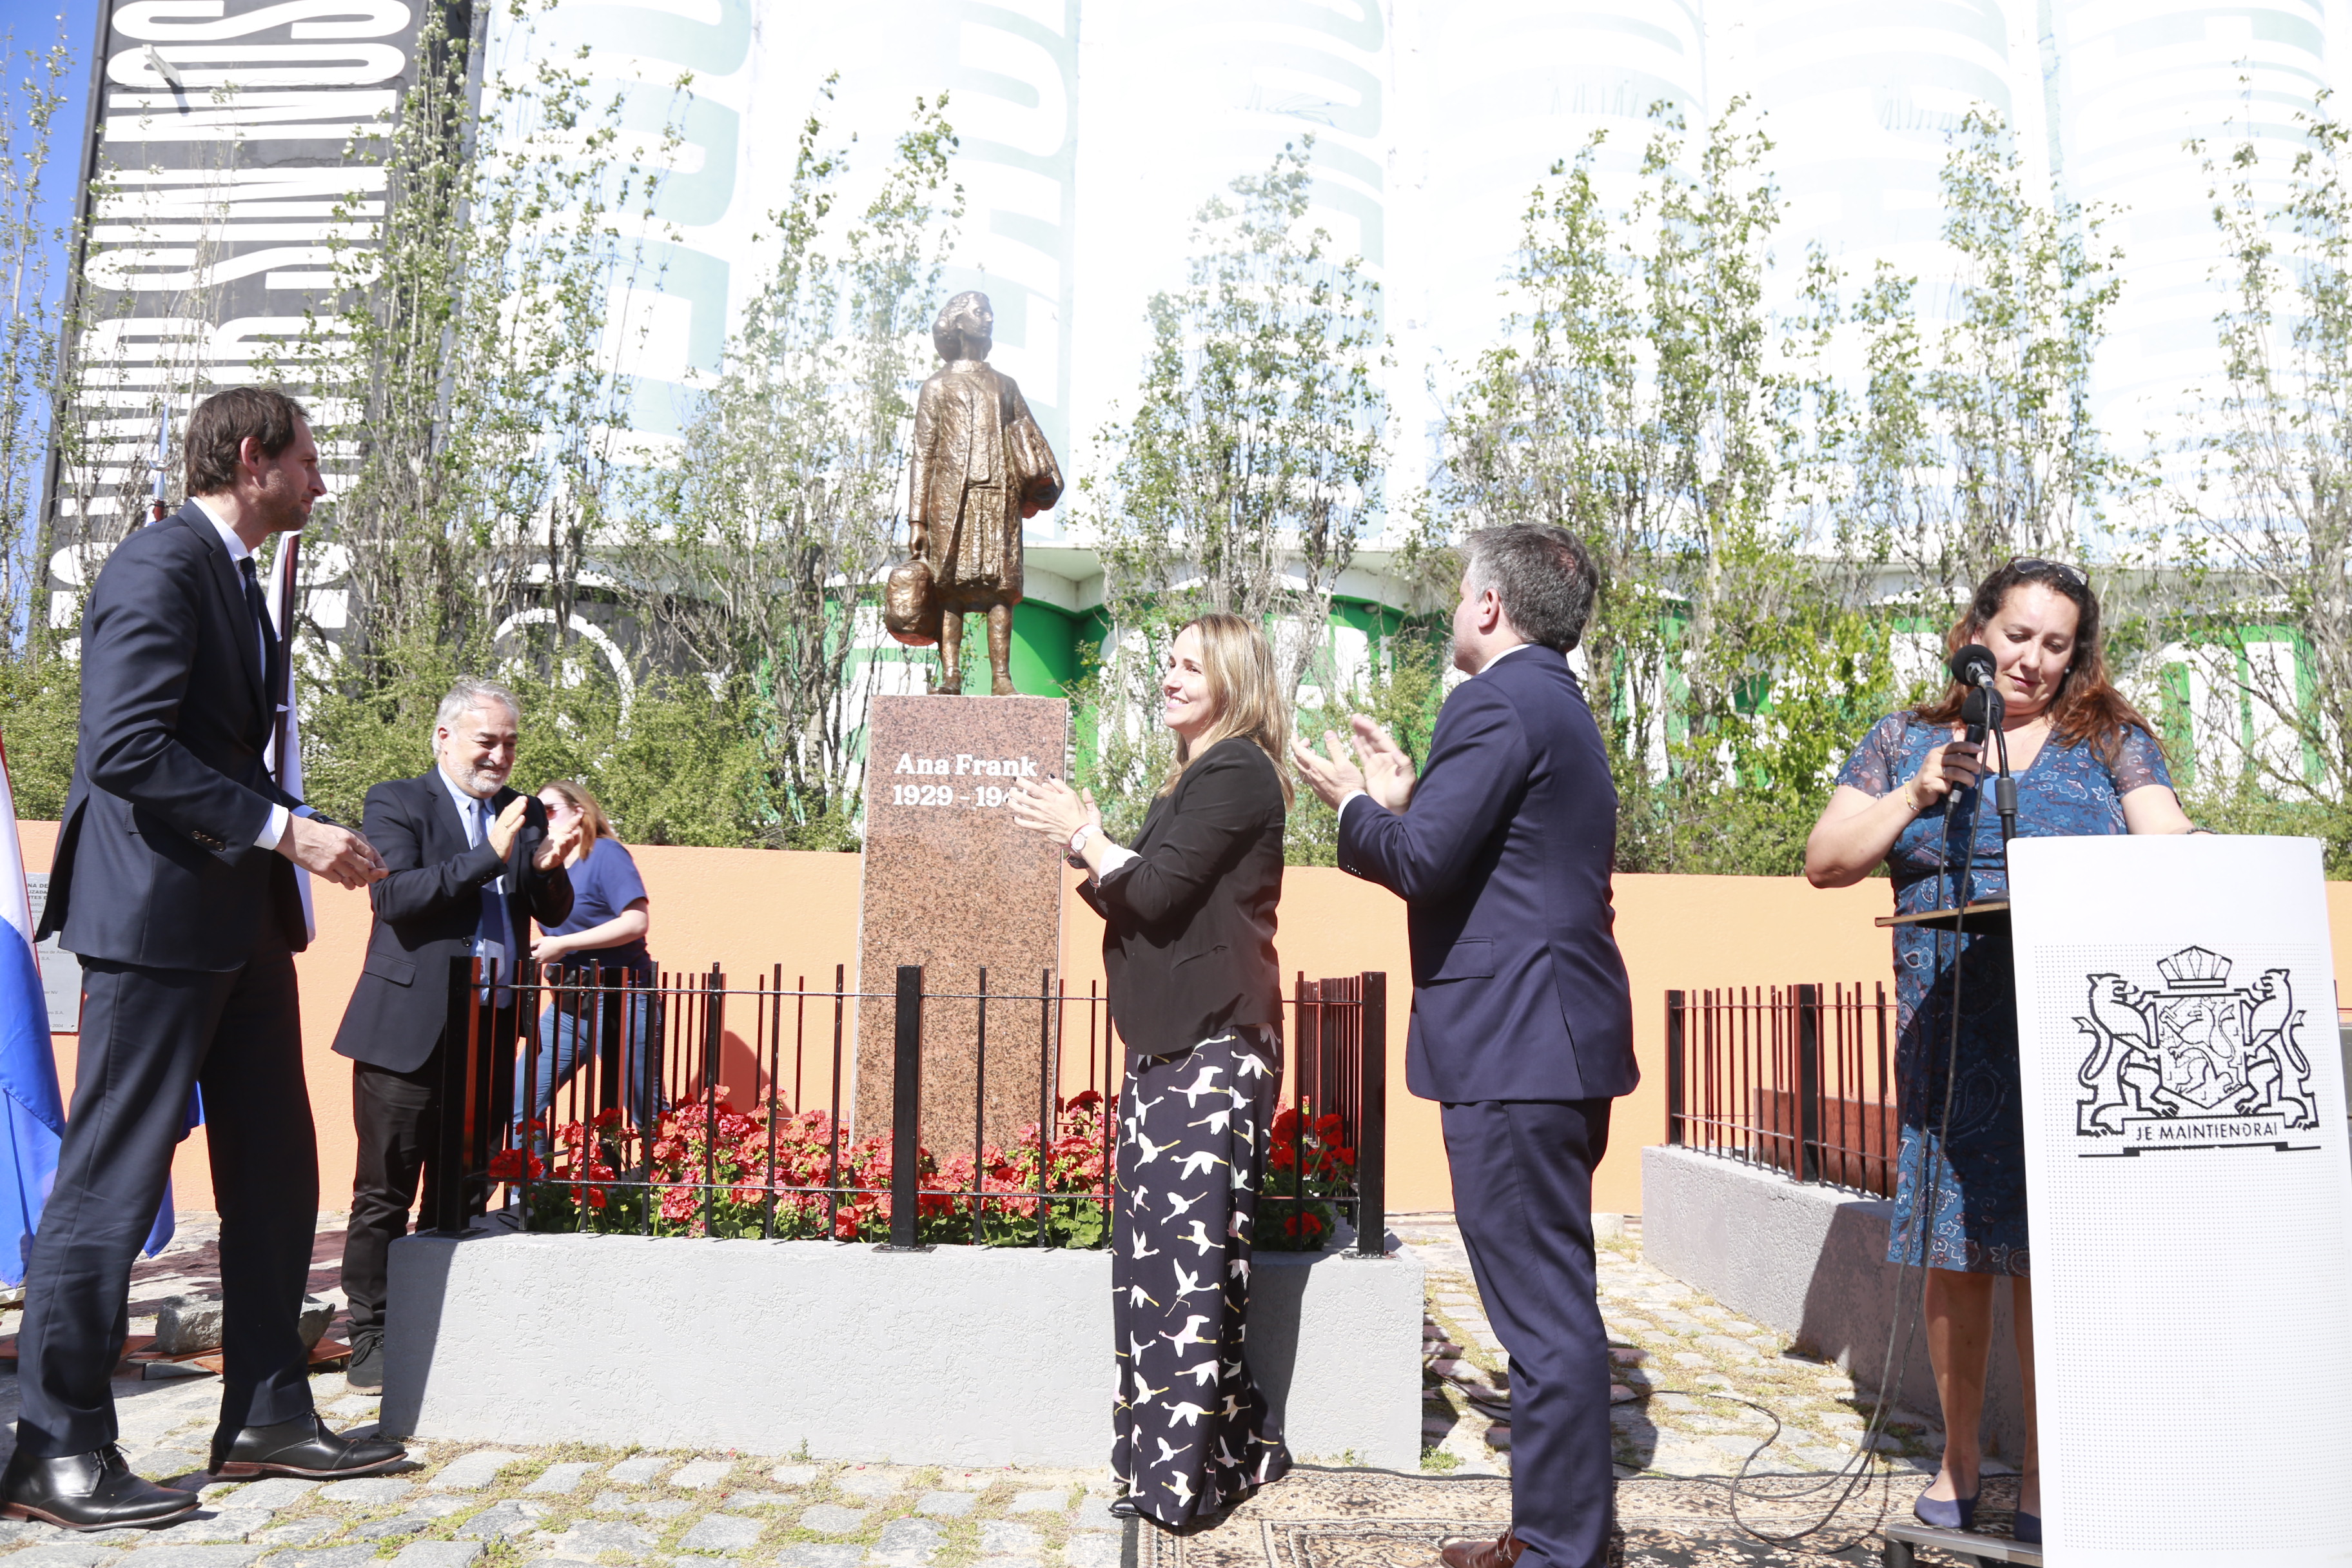 La Ciudad restauró y volvió a instalar la estatua de Ana Frank en Puerto Madero